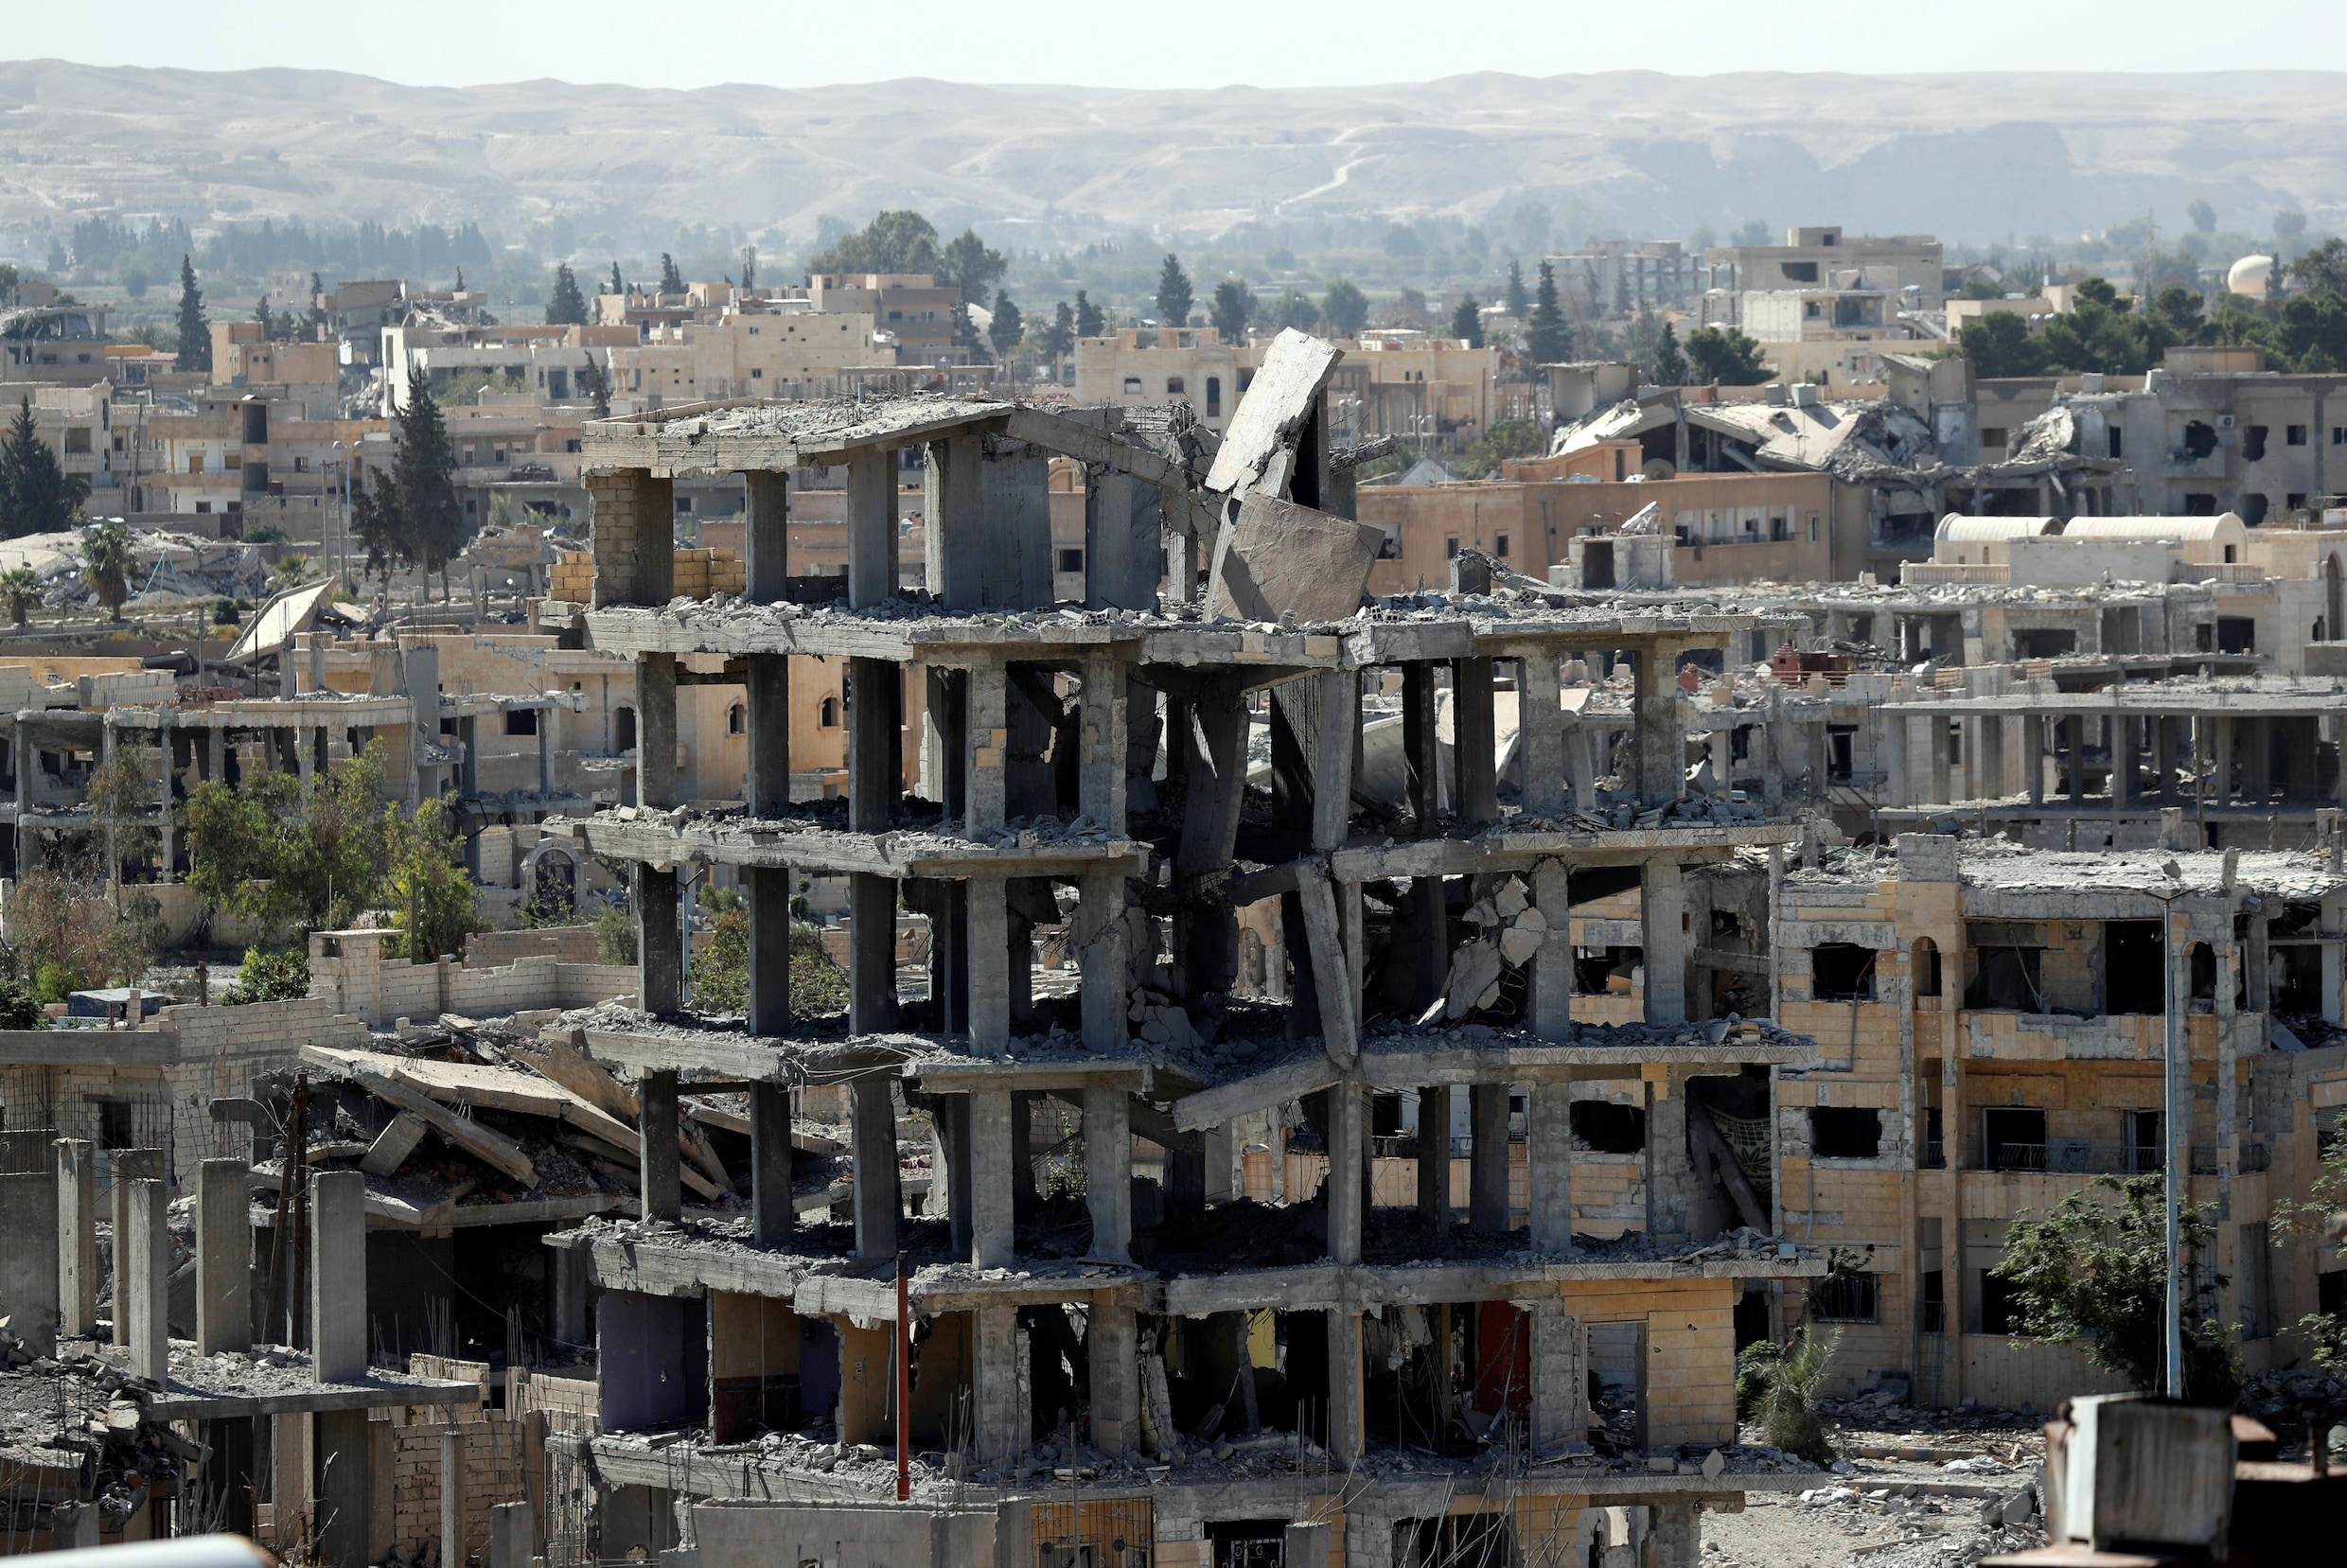 Hoofdstad van het kalifaat heroverd: "IS uit Raqqa verdreven"